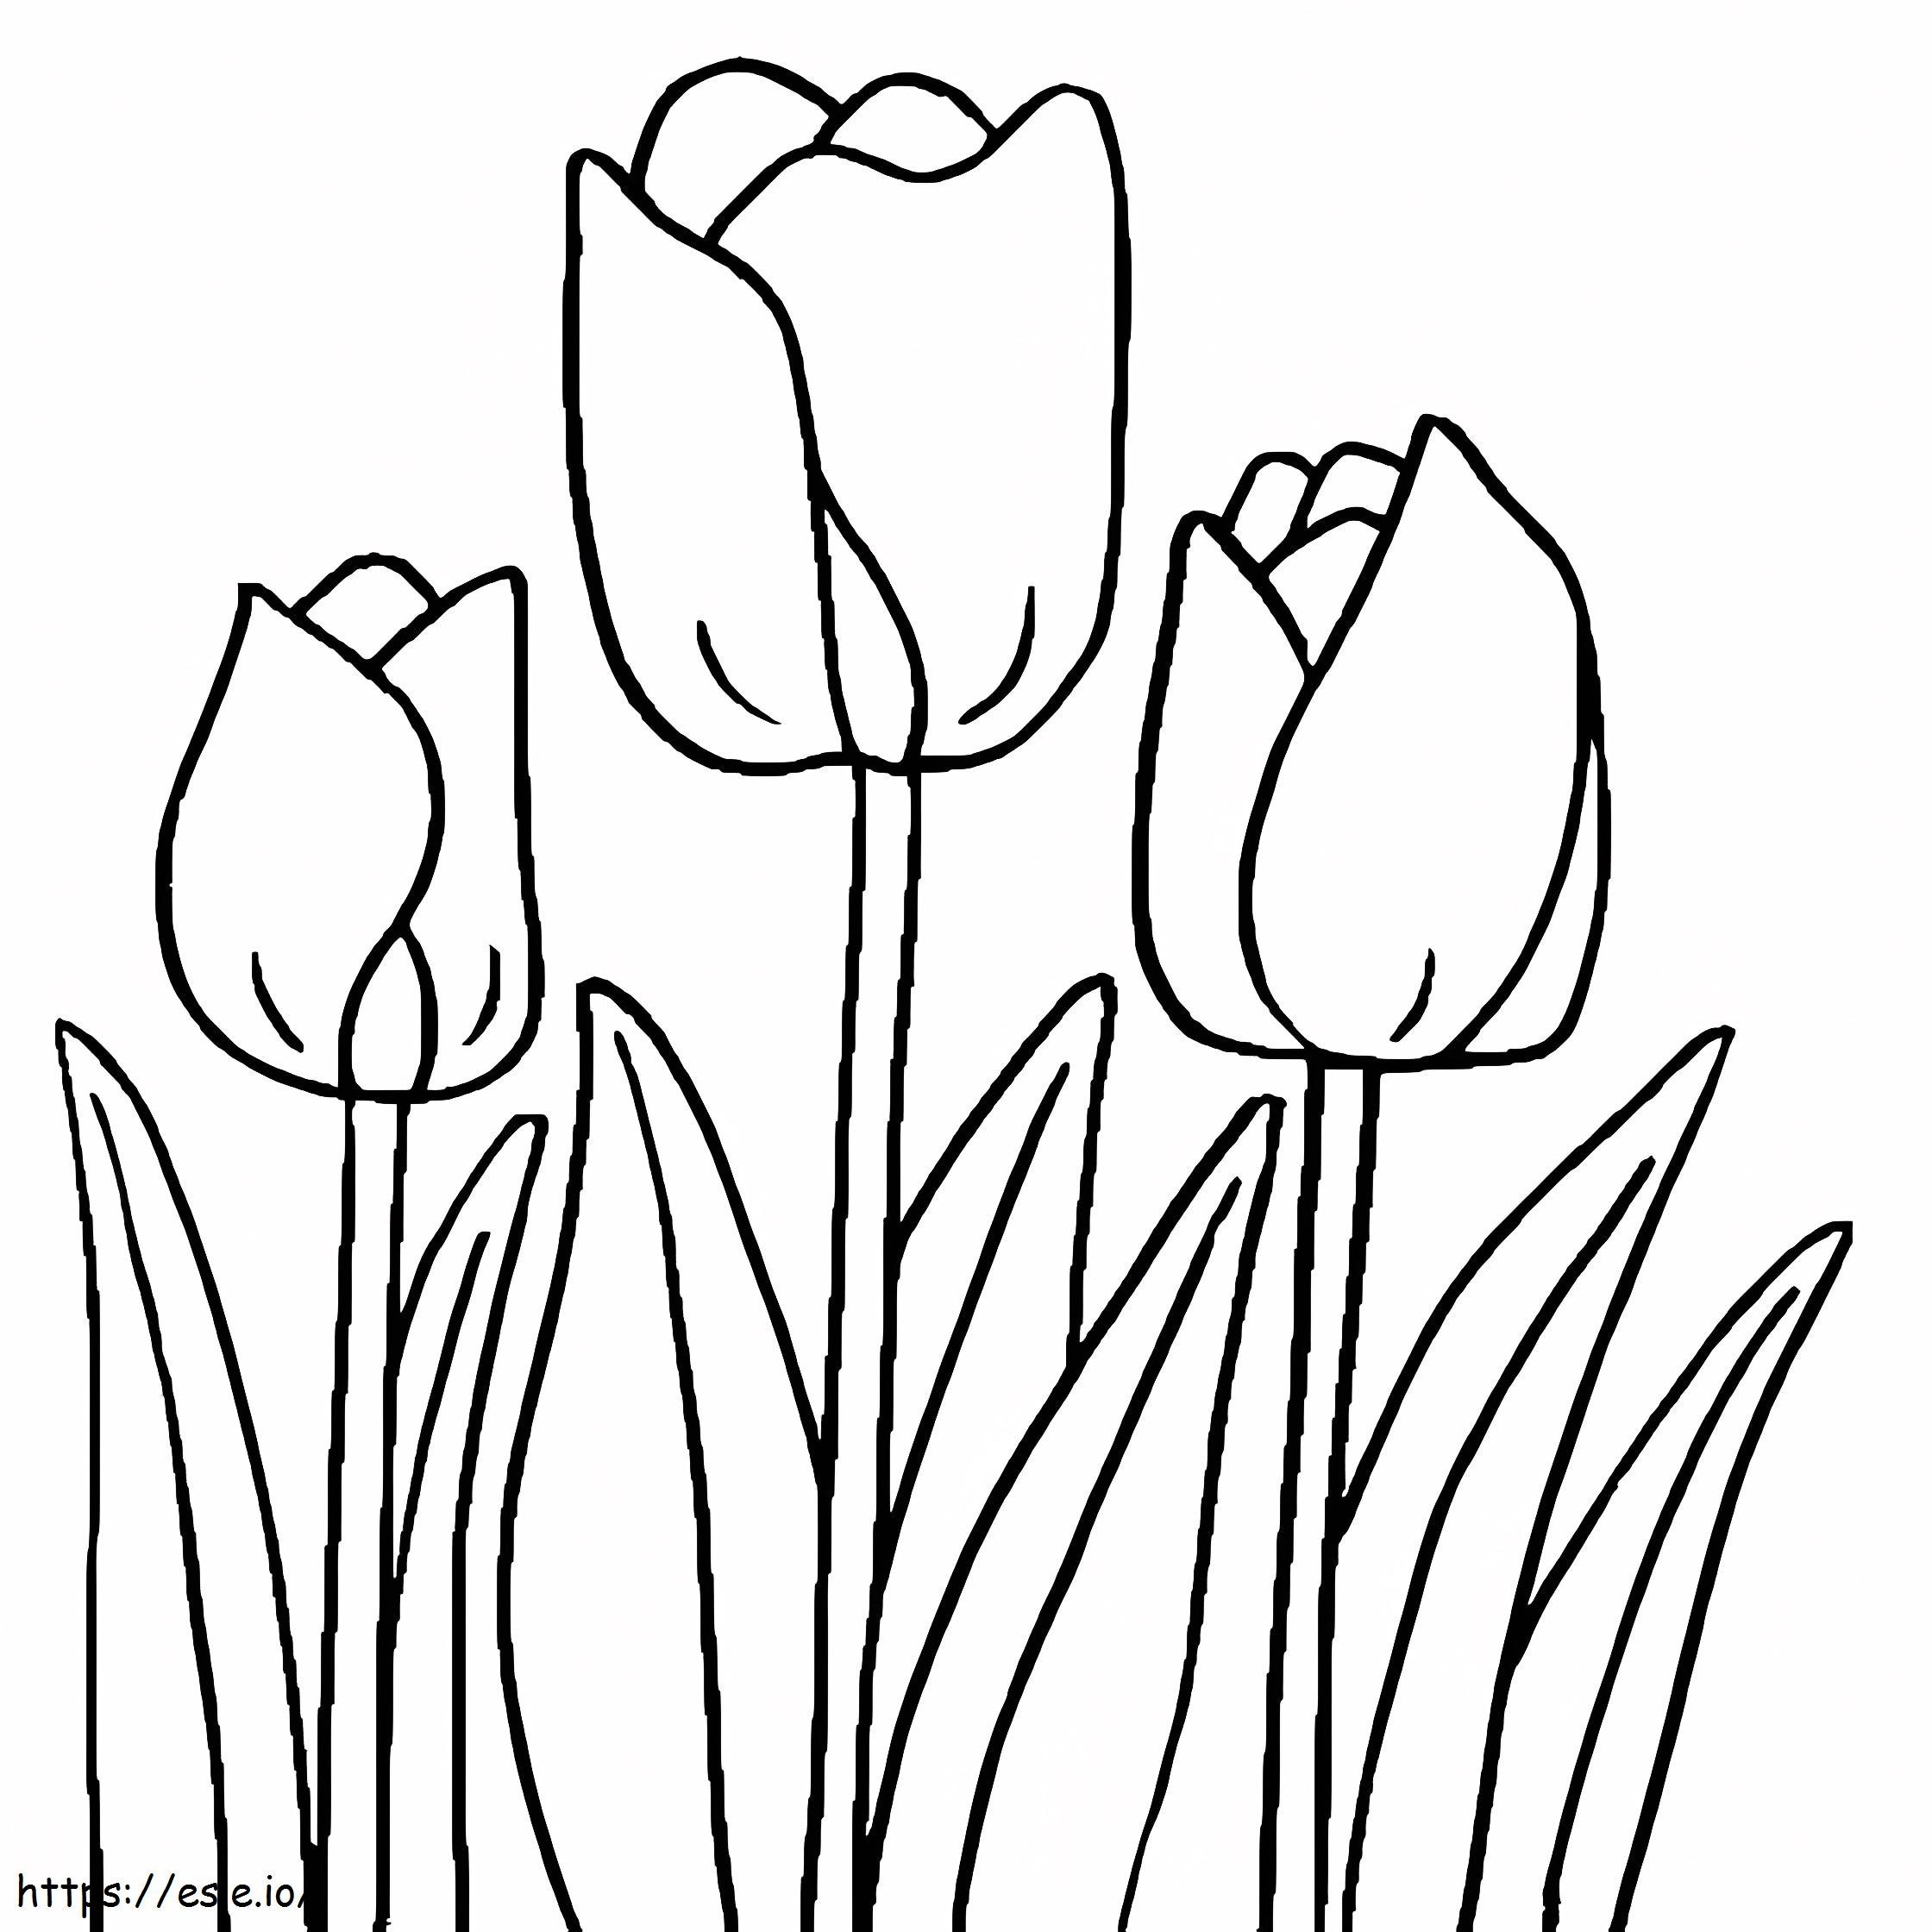 Tulipán Normal para colorear